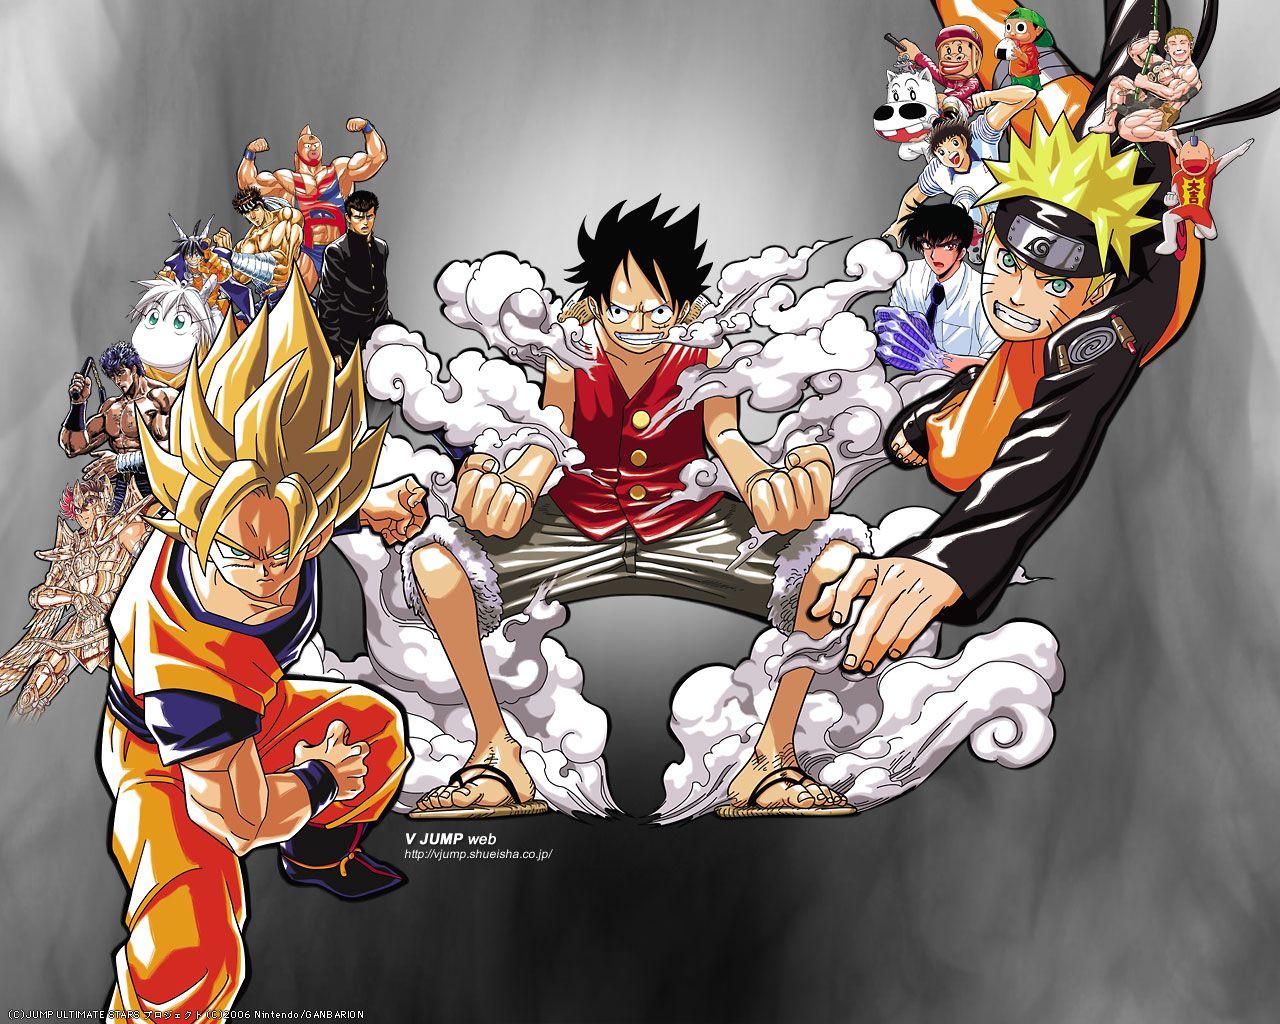 Goku, Luffy và Naruto – ba nhân vật anime nổi tiếng nhất trong lịch sử manga. Những hình ảnh anime thiên về ba nhân vật này không chỉ là cuộc chiến giữa ba siêu anh hùng mà còn mang lại cho người xem một trải nghiệm tuyệt vời với các tính cách, tài năng và khả năng đặc biệt riêng của mỗi nhân vật.